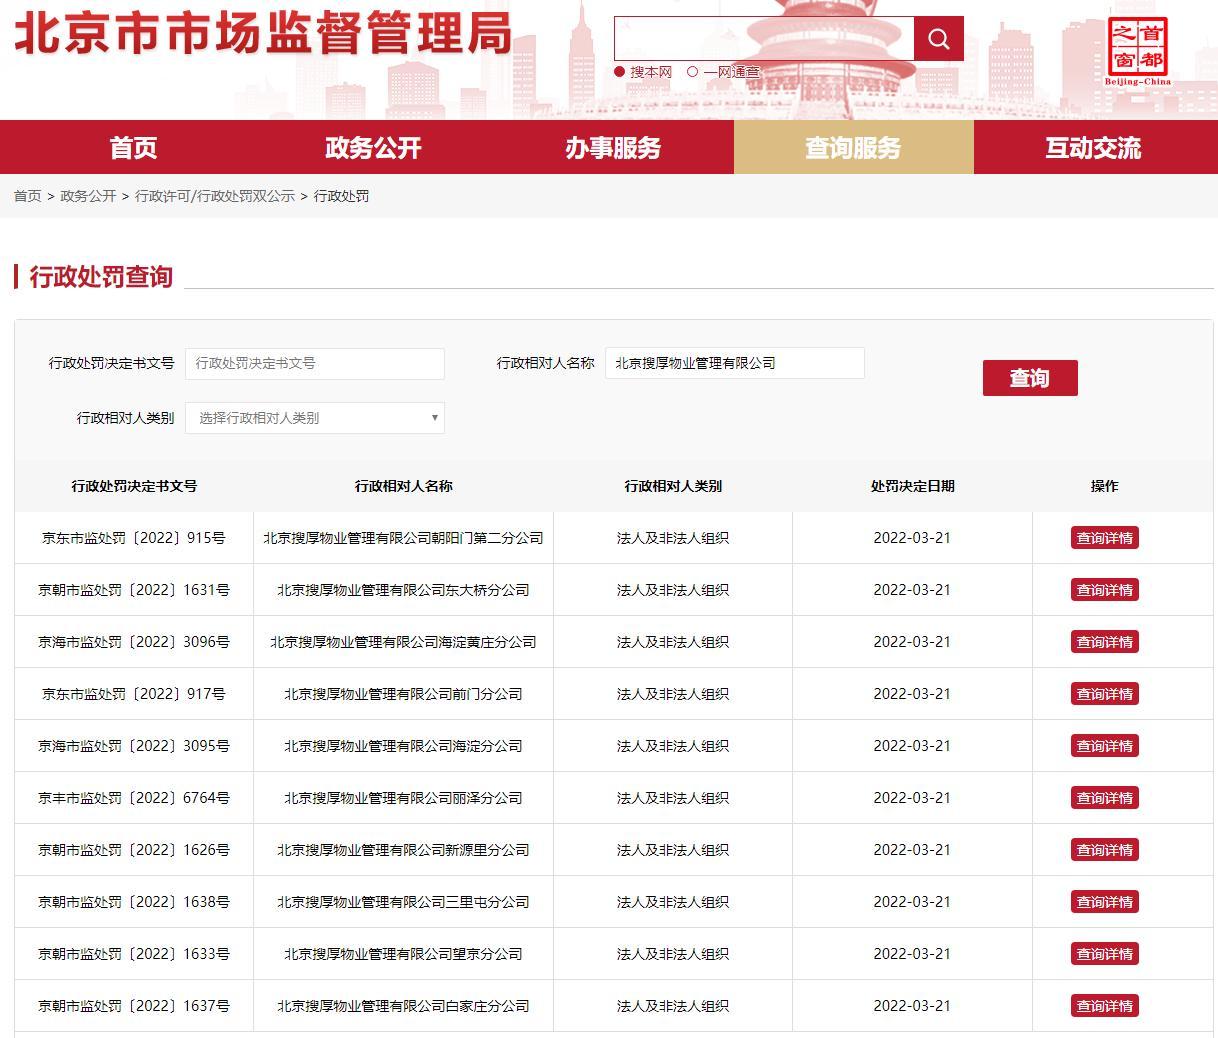 SOHO中国物业因加价收取电费遭罚7900万元 近4个月内已因电领罚超1.6亿元